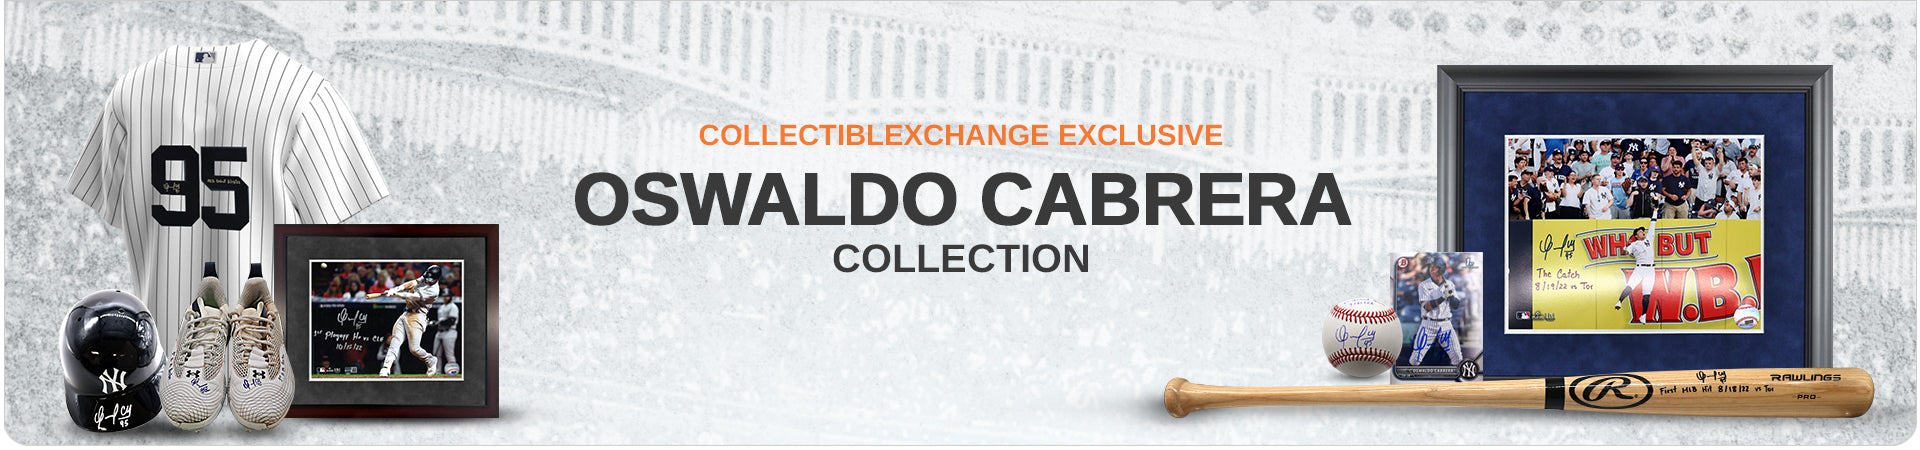 Oswaldo Cabrera – CollectibleXchange